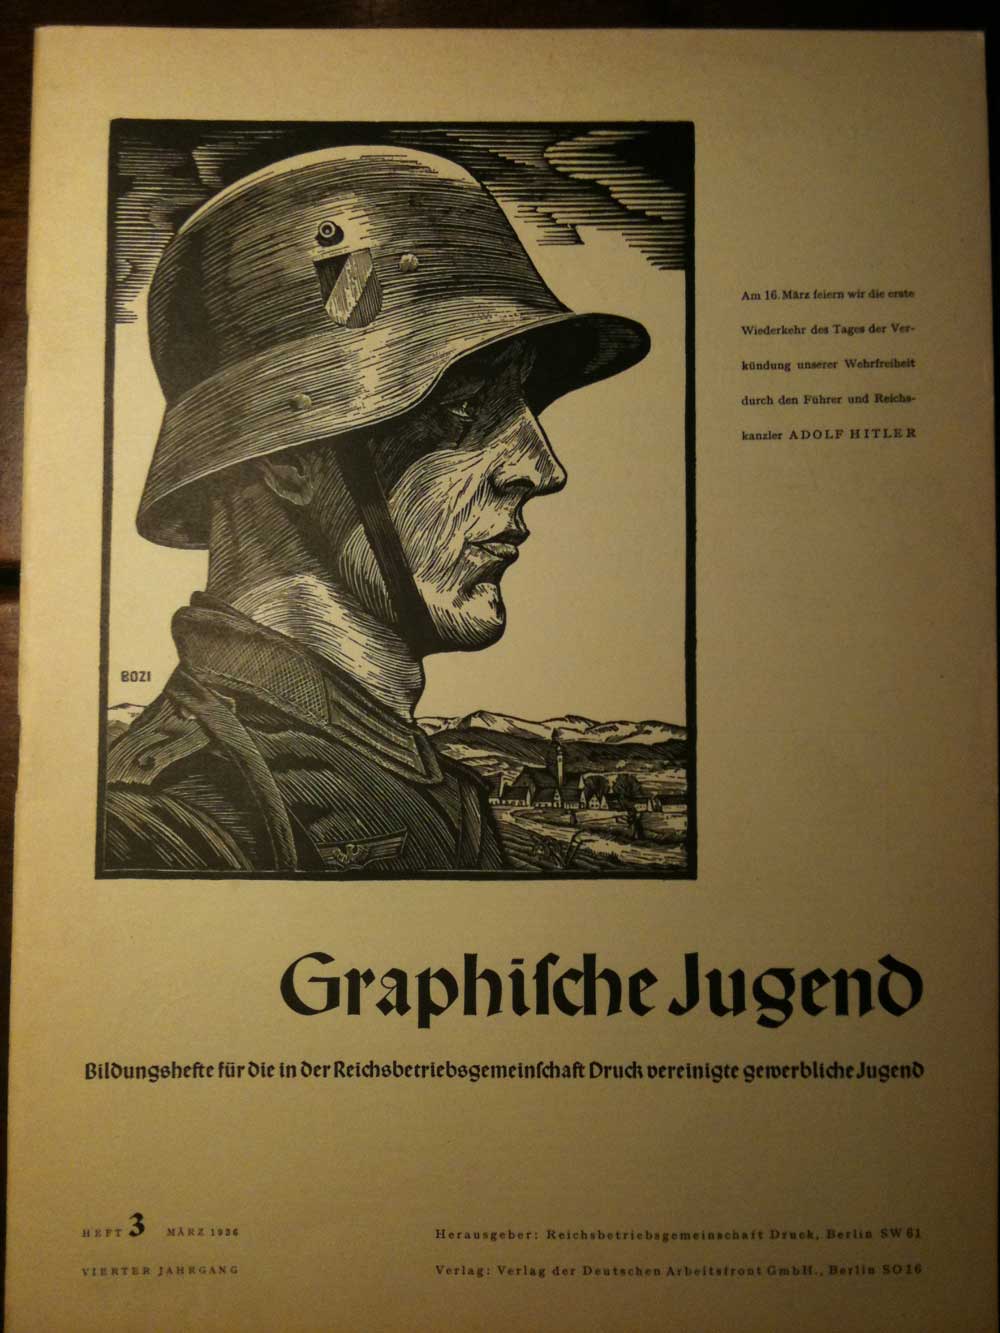 Heft 3 von 1936, Graphische Jugend